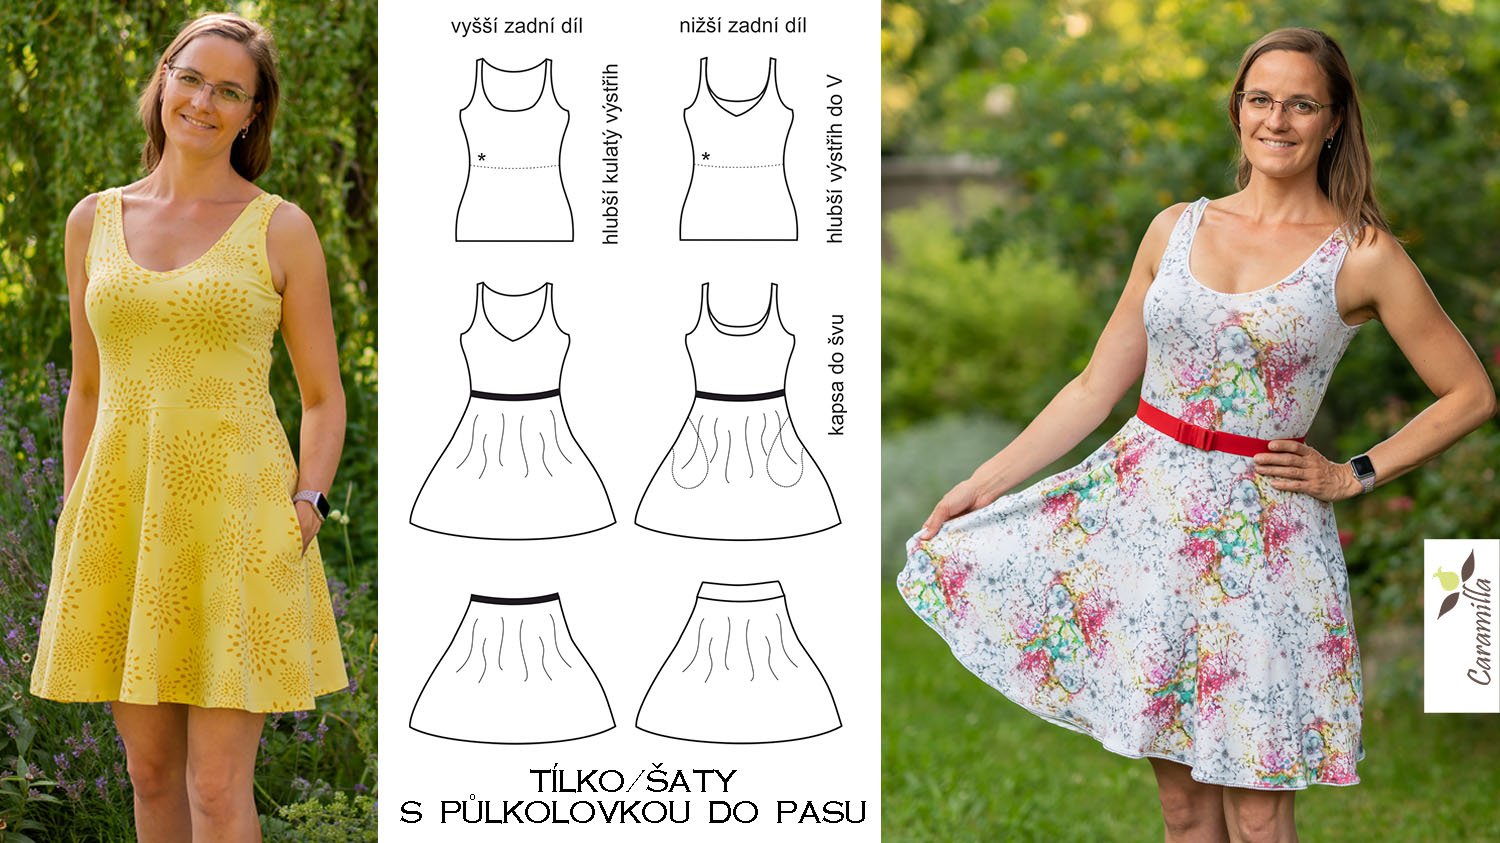 Dámské tílko-šaty s půlkolovou sukní 3v1 (tílko, půlkolová sukně do pasu, šaty)